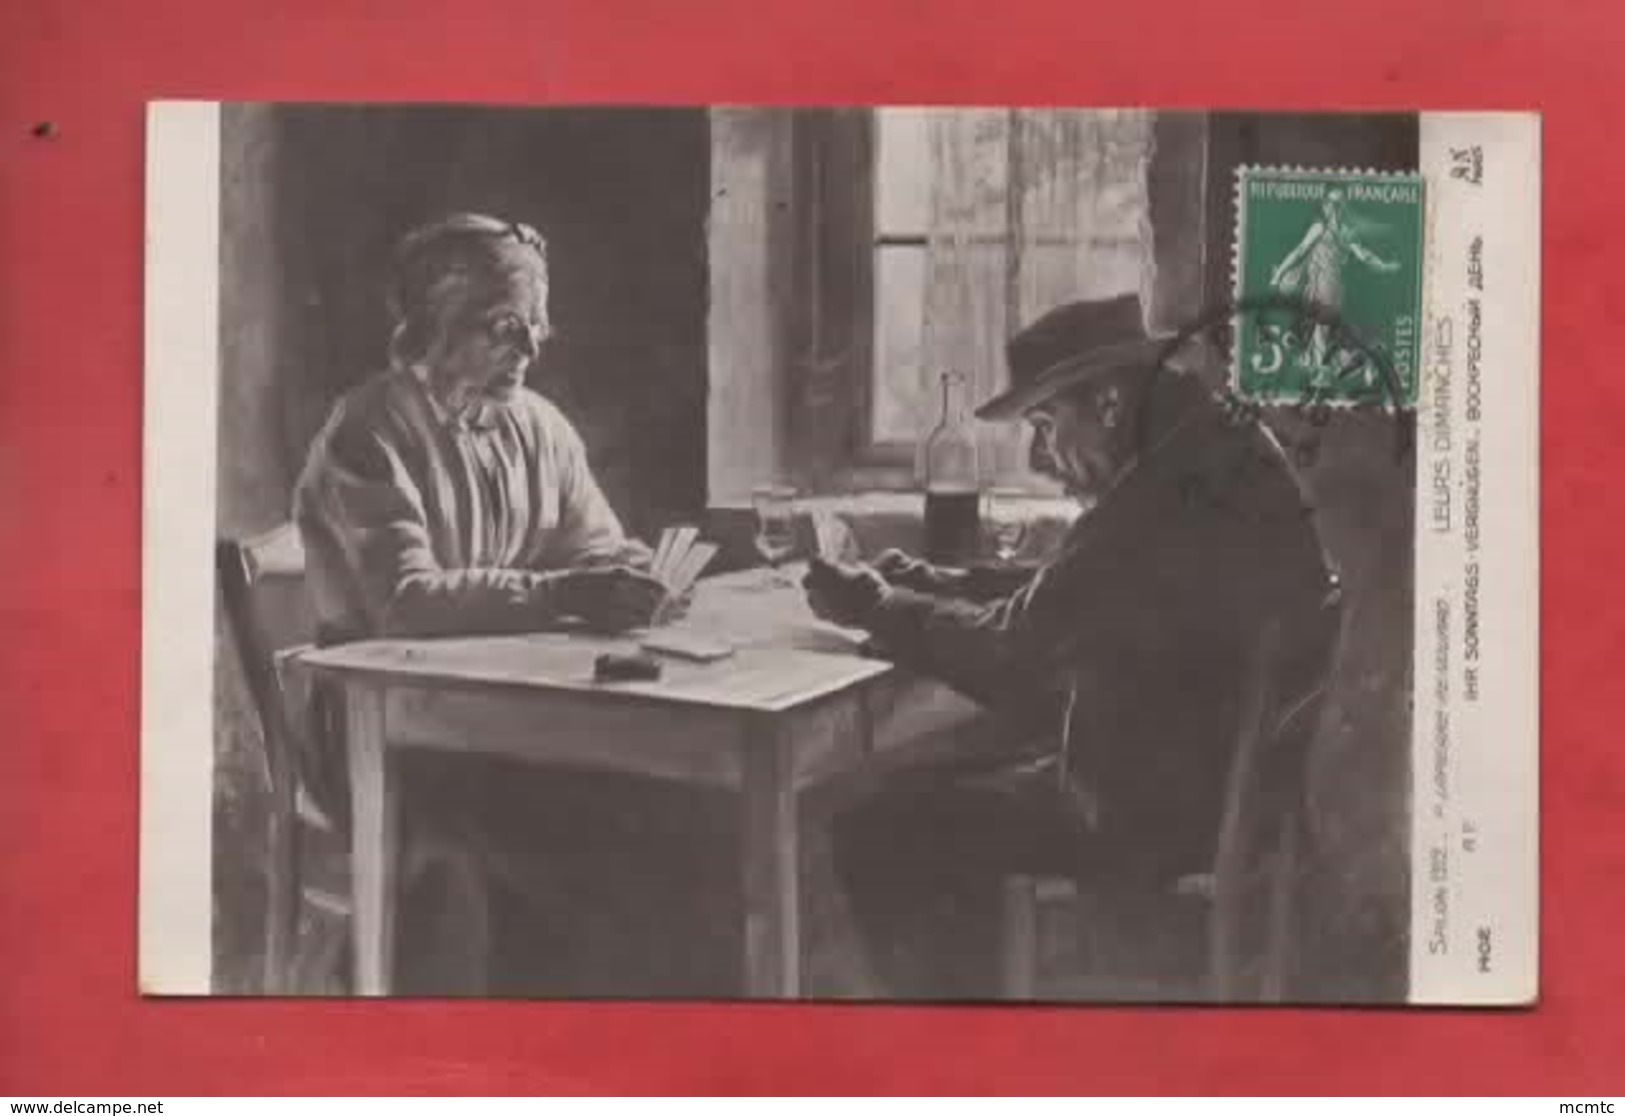 CPA -  Salons 1912 - P.Lapierre Renouard  -  Leurs Dimanches  -( Cartes à Jouer , Jeu De Cartes ) - Carte Da Gioco